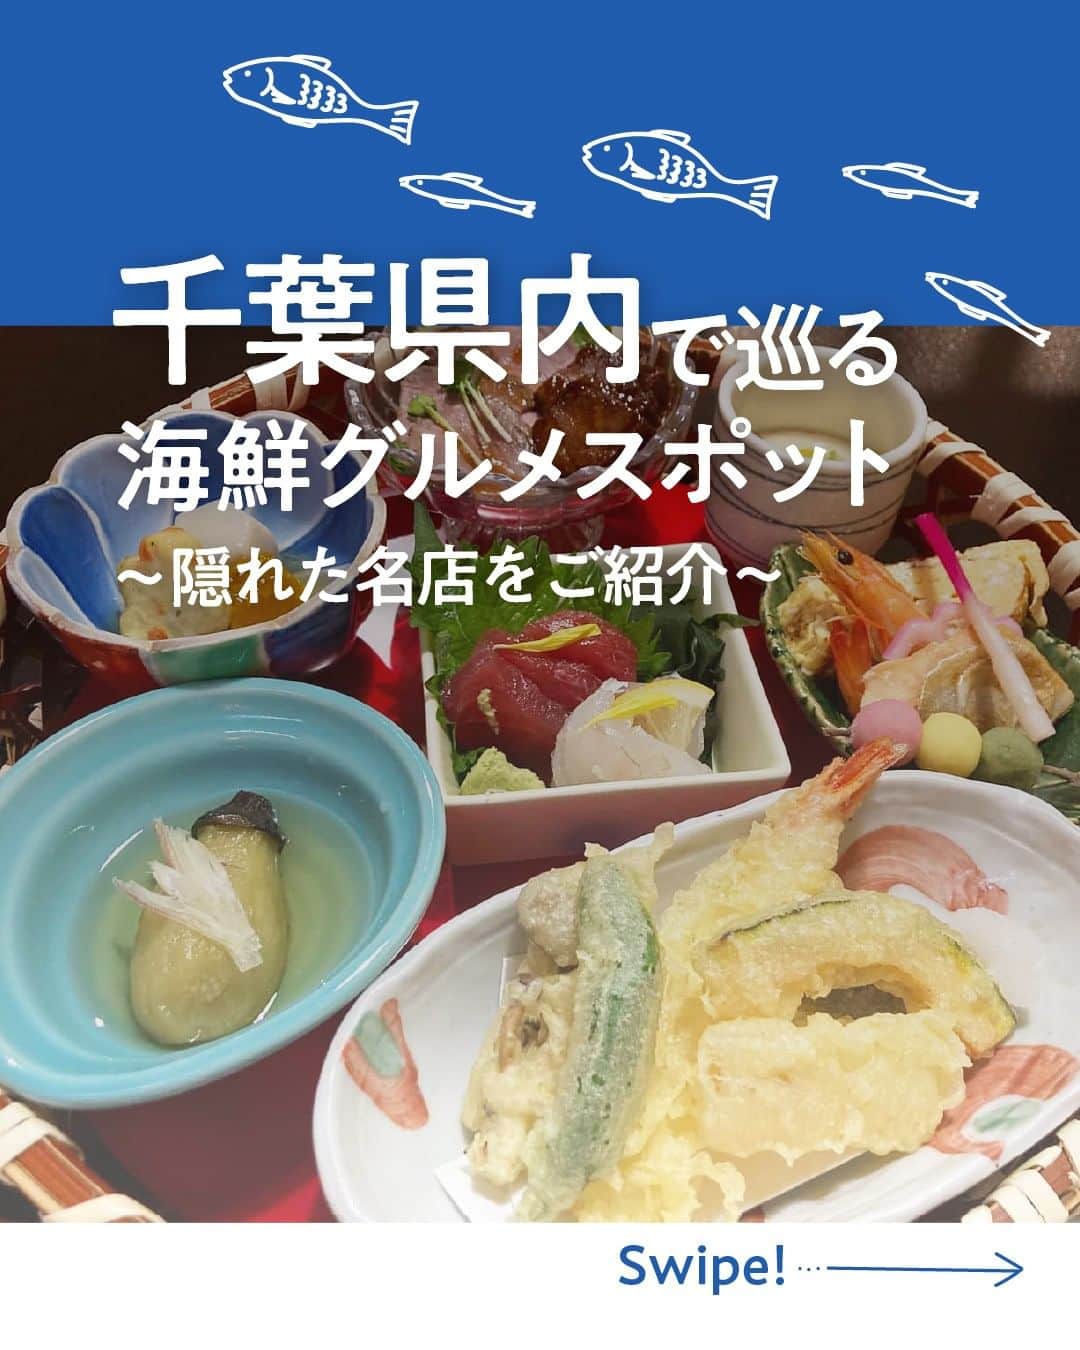 現地発信の旅行サイト「たびらい」のインスタグラム：「行ってみたいと思ったら❤で教えてください♪  海鮮料理といえば皆さんは何を思い浮かべますか💭 煮て良し、焼いて良し、そのままでも良し！調理方法によって様々な表情を変える海鮮料理ですが、千葉県内にはそんな海鮮を楽しめる老舗店がたくさんあります。  中でも今回は、千葉県にある隠れた名店3軒をご紹介します。 どのお店もボリューム満点、贅沢なお食事時間を過ごせるお店です♪ ぜひ一度訪れてみてはいかがでしょうか。  ①治ろうや鮨処（銚子） ②藤井川魚店 （いすみ） ③かくじゅう　（東金）  ▼ほかの投稿はこちらから📷 @tabirai   #千葉 #千葉観光 #海鮮 #海鮮料理 #お寿司 #うなぎ #天ぷら #千葉ランチ #千葉ディナー #いすみ #東金 #銚子 #たびらい #たびらいホテル #tabirai #たびらいレンタカー #tabirai_trip」